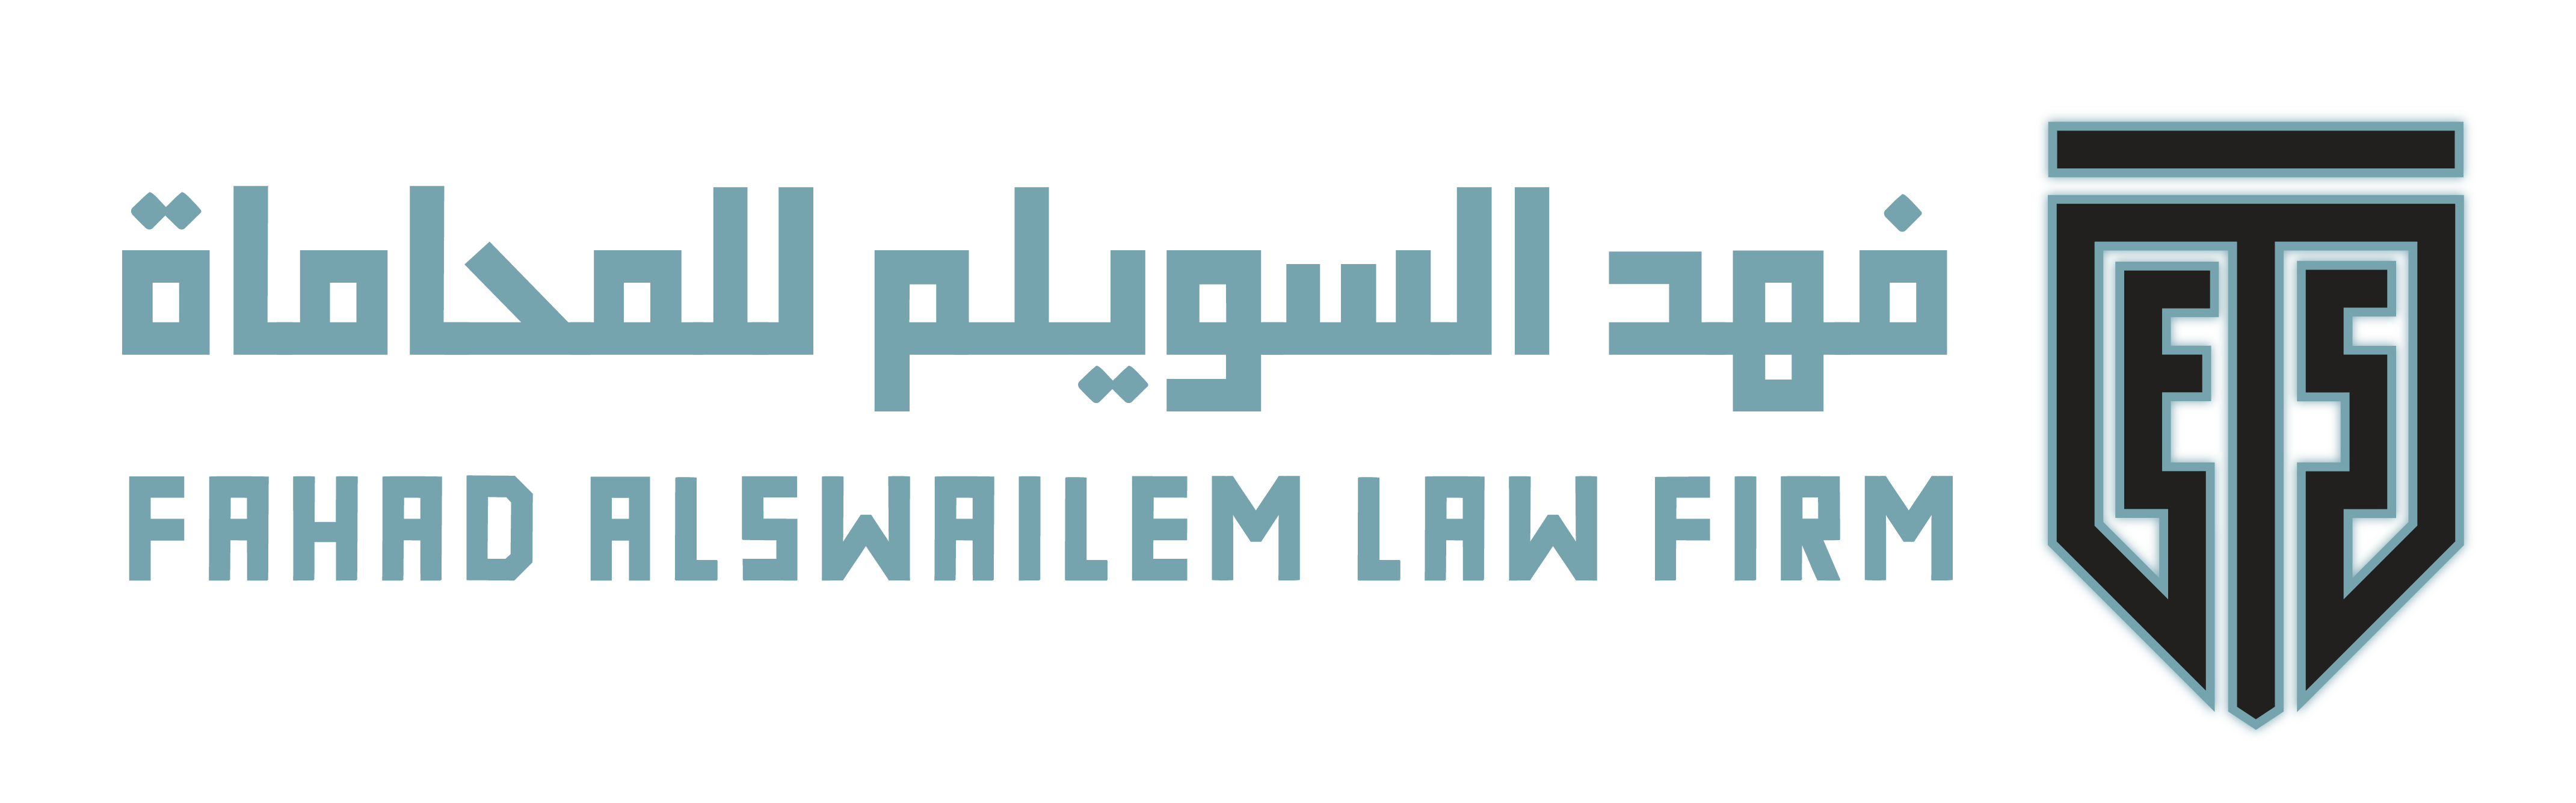 المحامي فهد السويلم إنشاء الموقع الإلكتروني